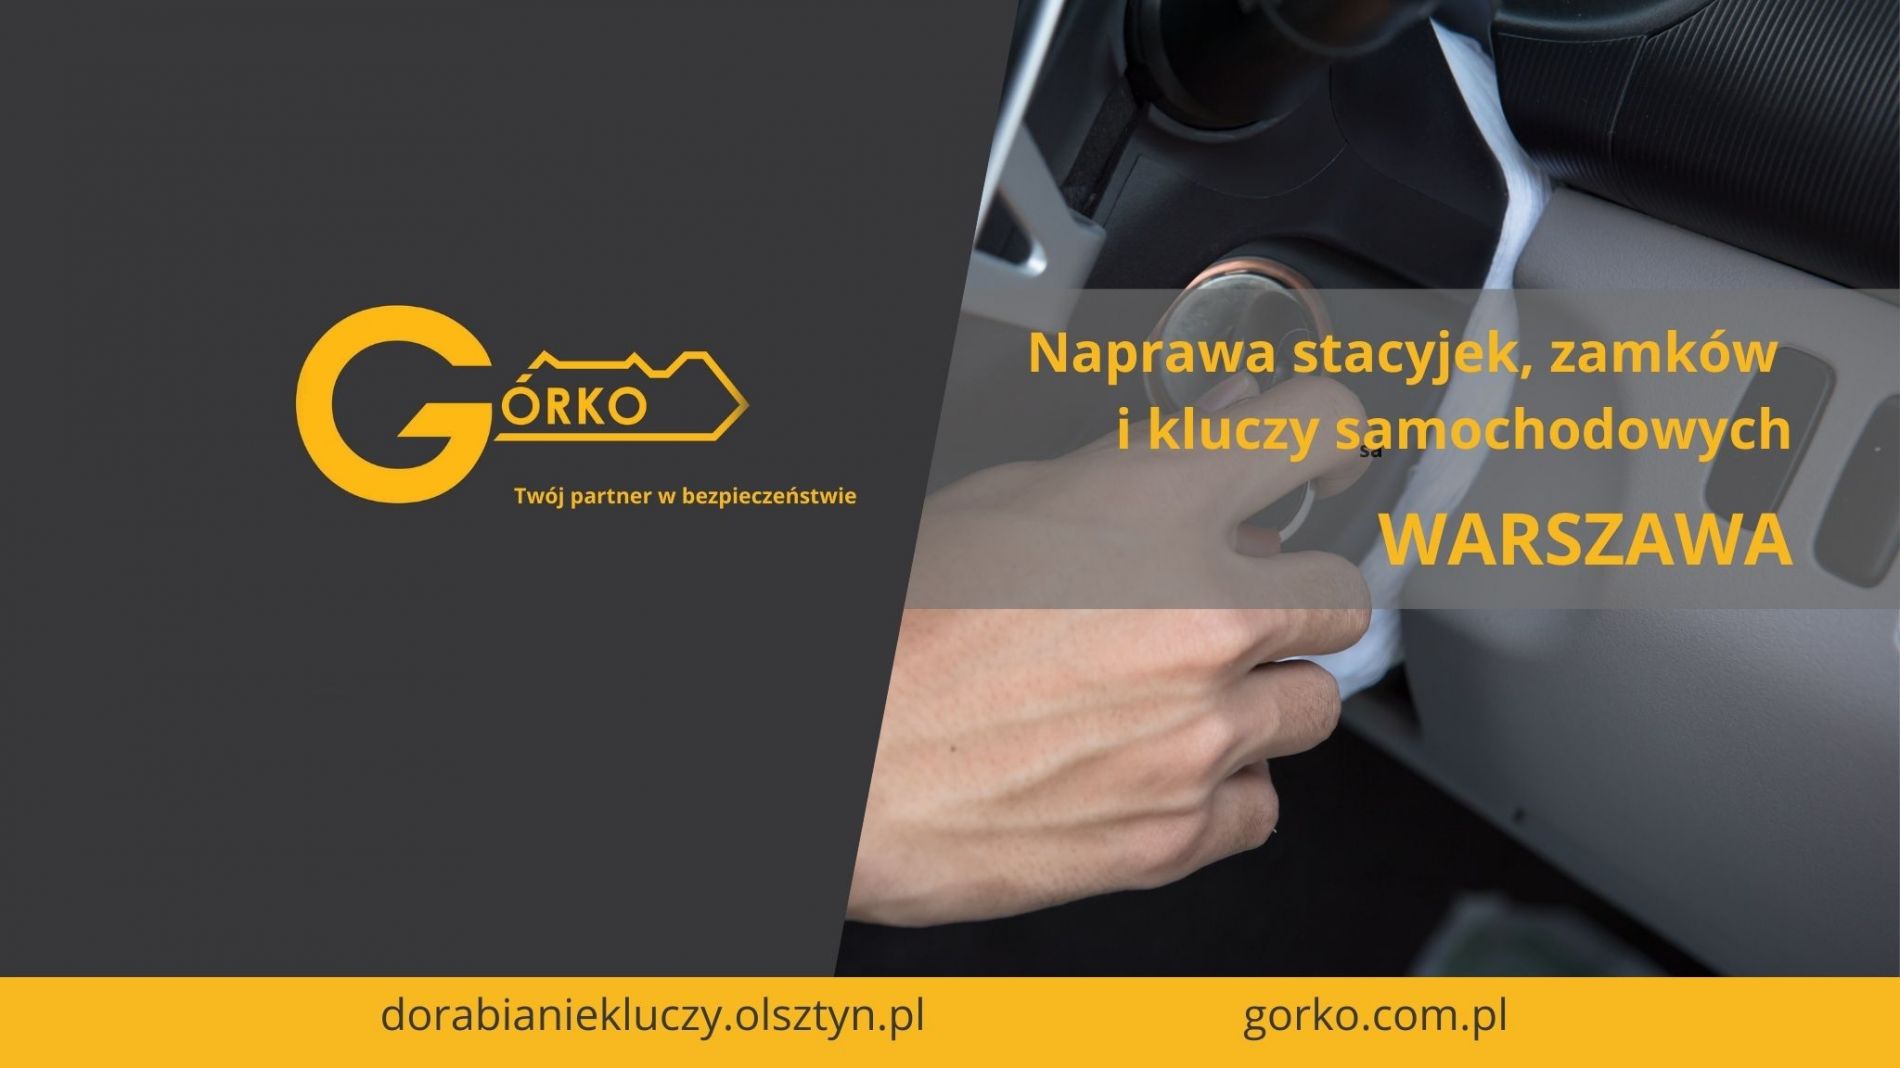 Naprawa stacyjek, zamków i kluczy samochodowych – Warszawa (Usługa zdalna)